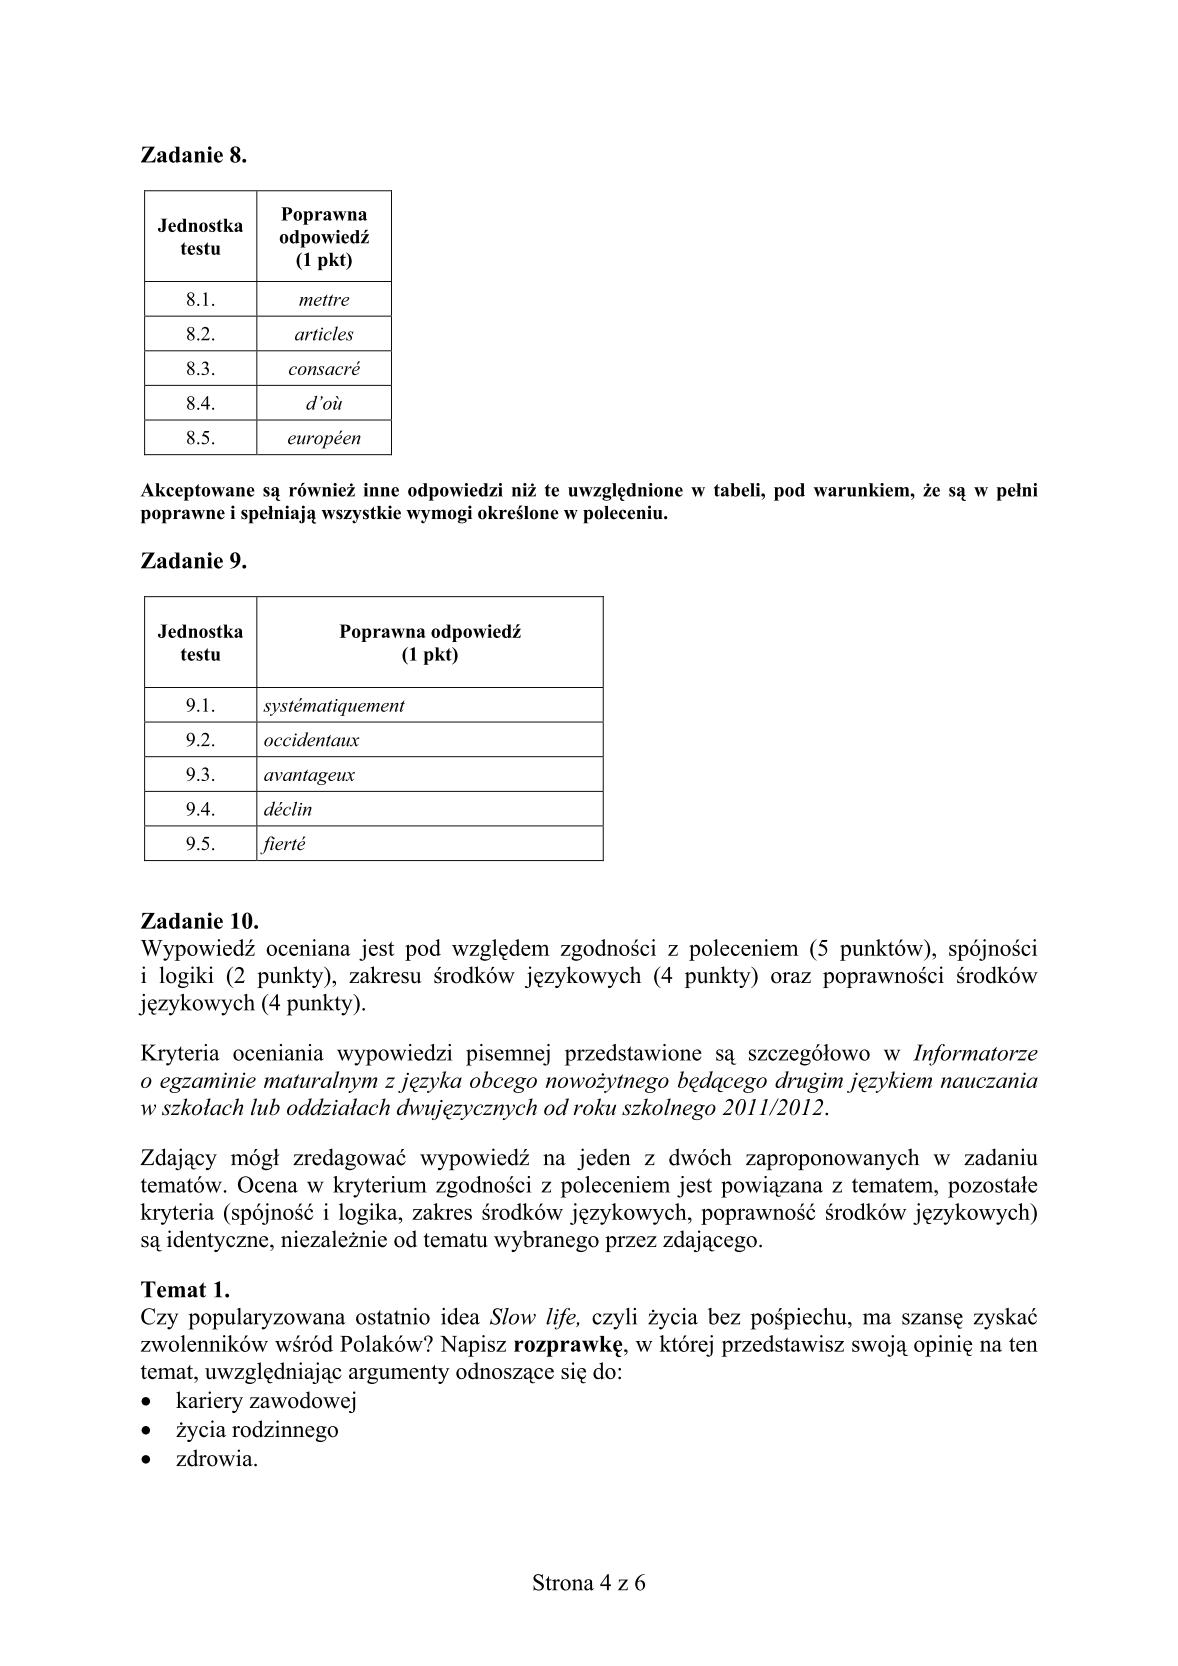 odpowiedzi-jezyk-francuski-dla-absolwentow-klas-dwujezycznych-matura-2014-str.4